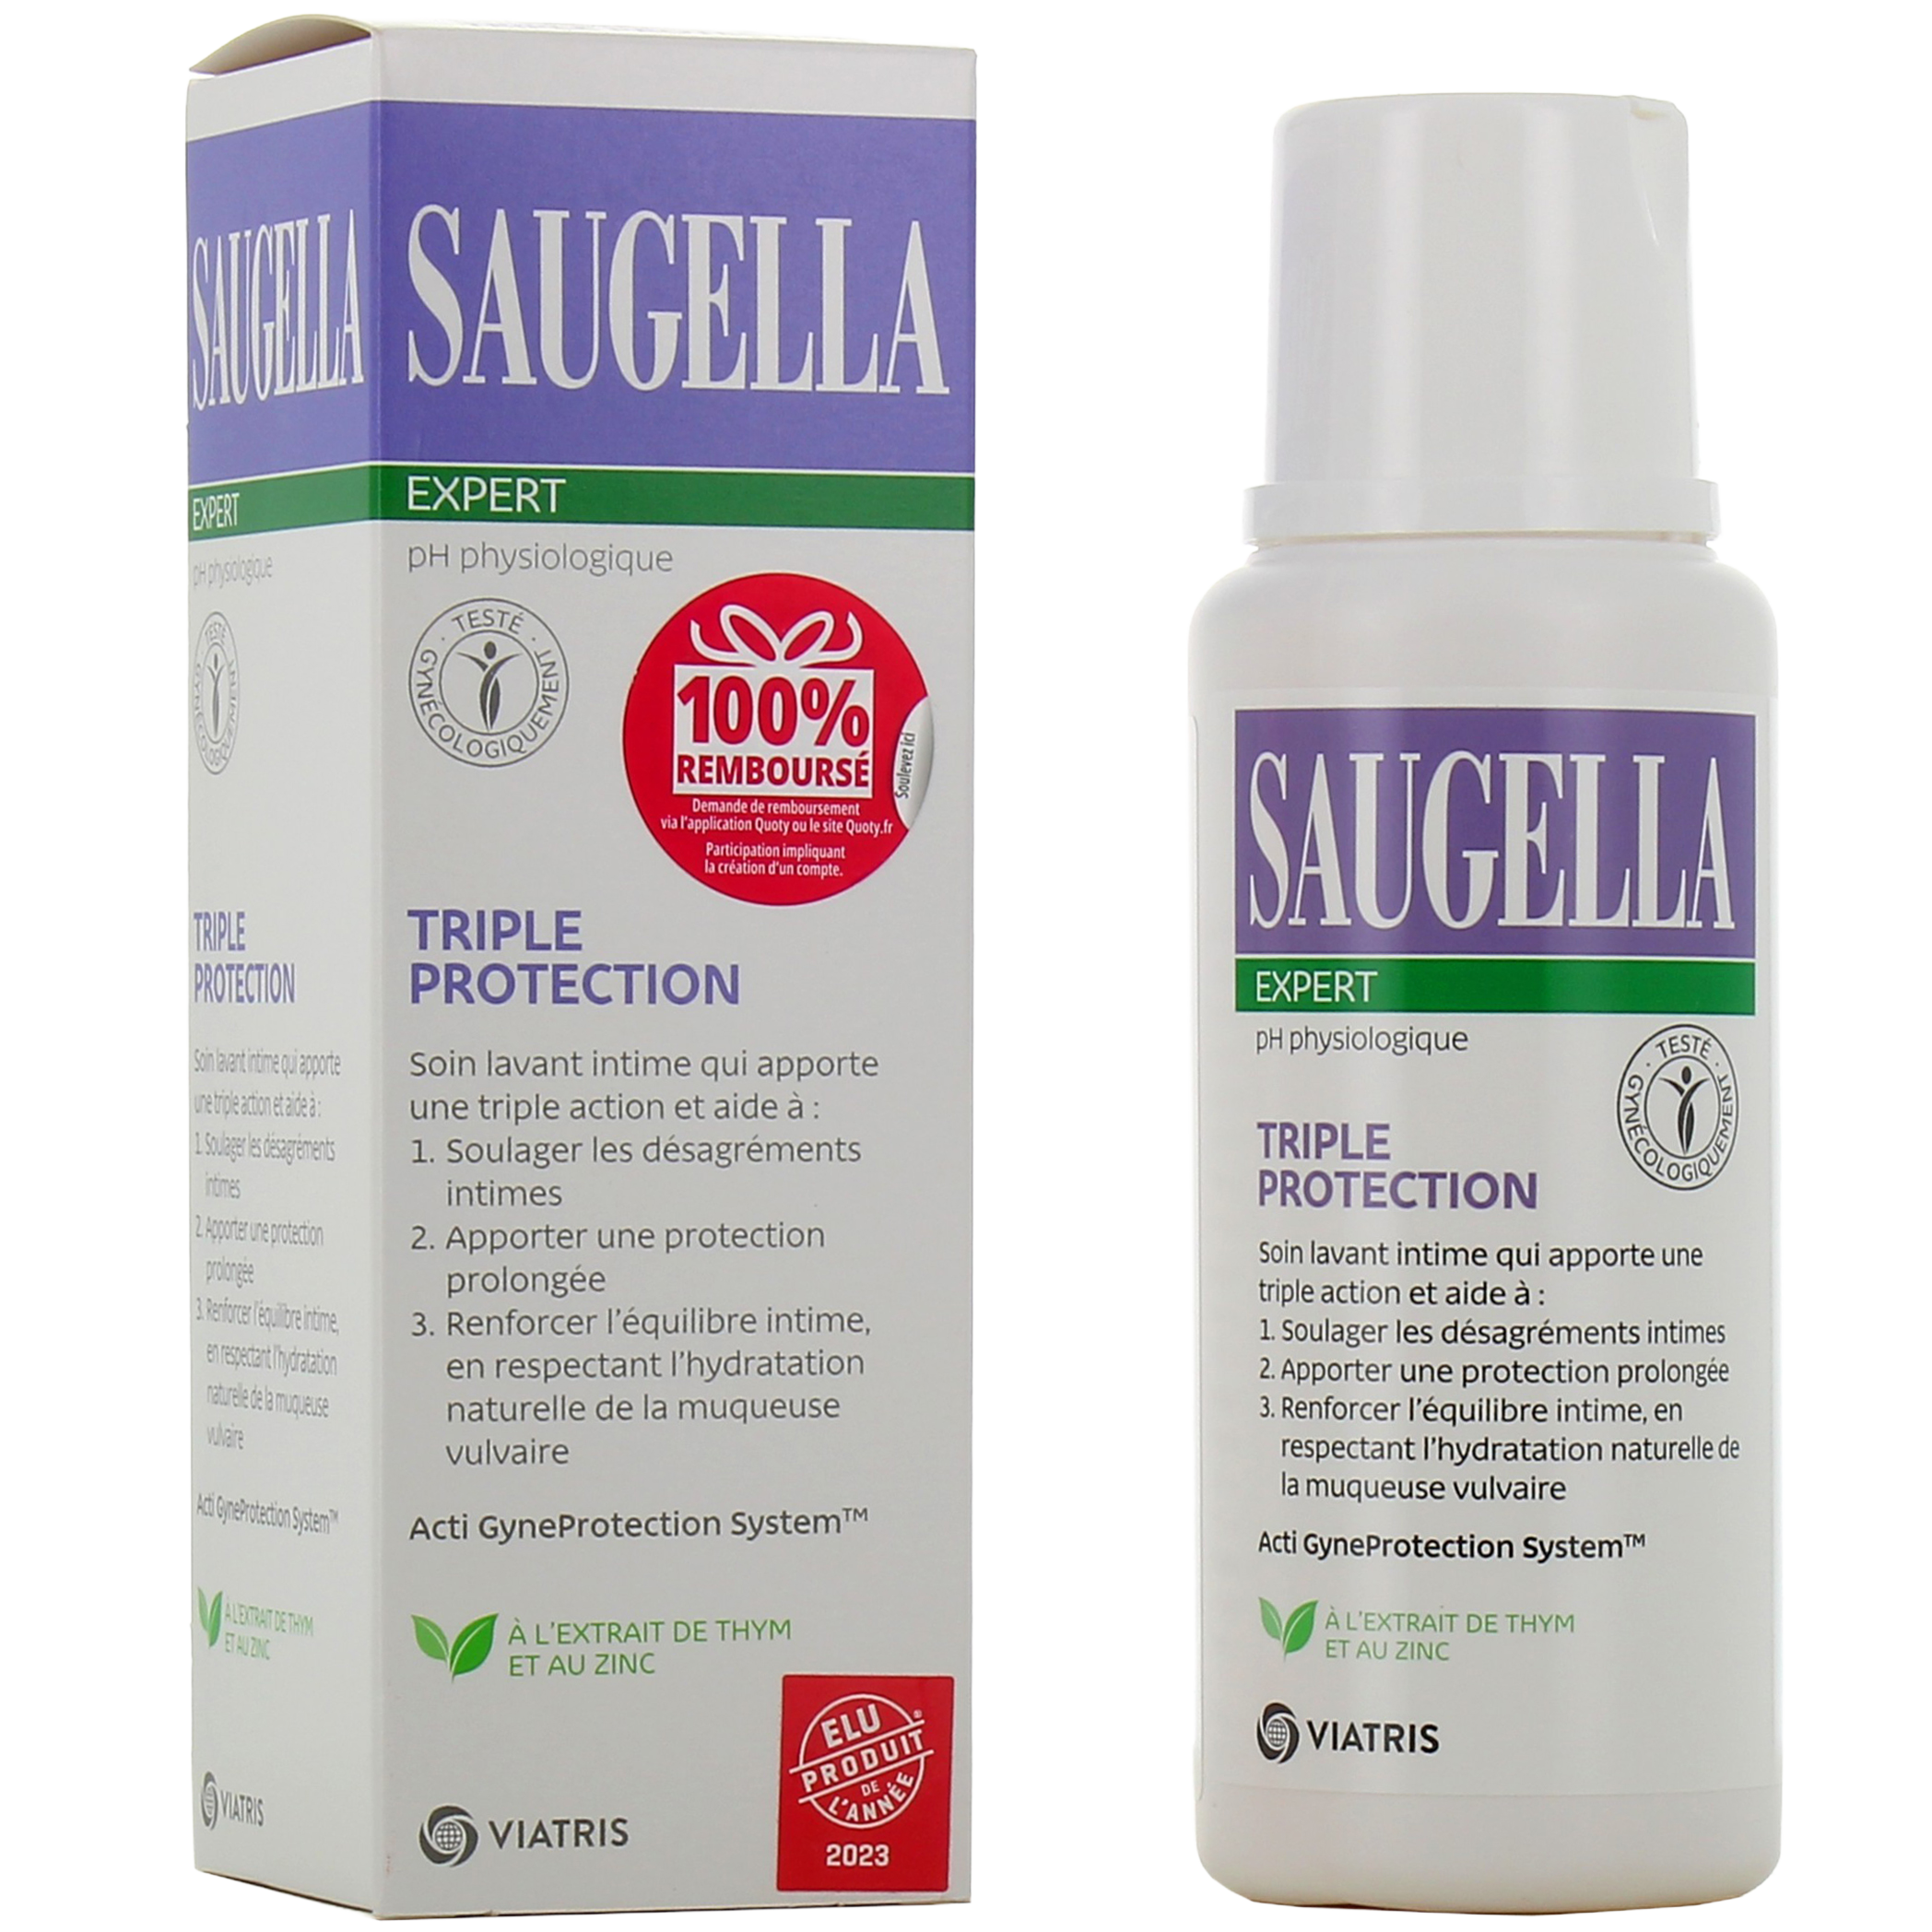 Saugella intime : Achat de soins pour l'hygiène intime Saugella en